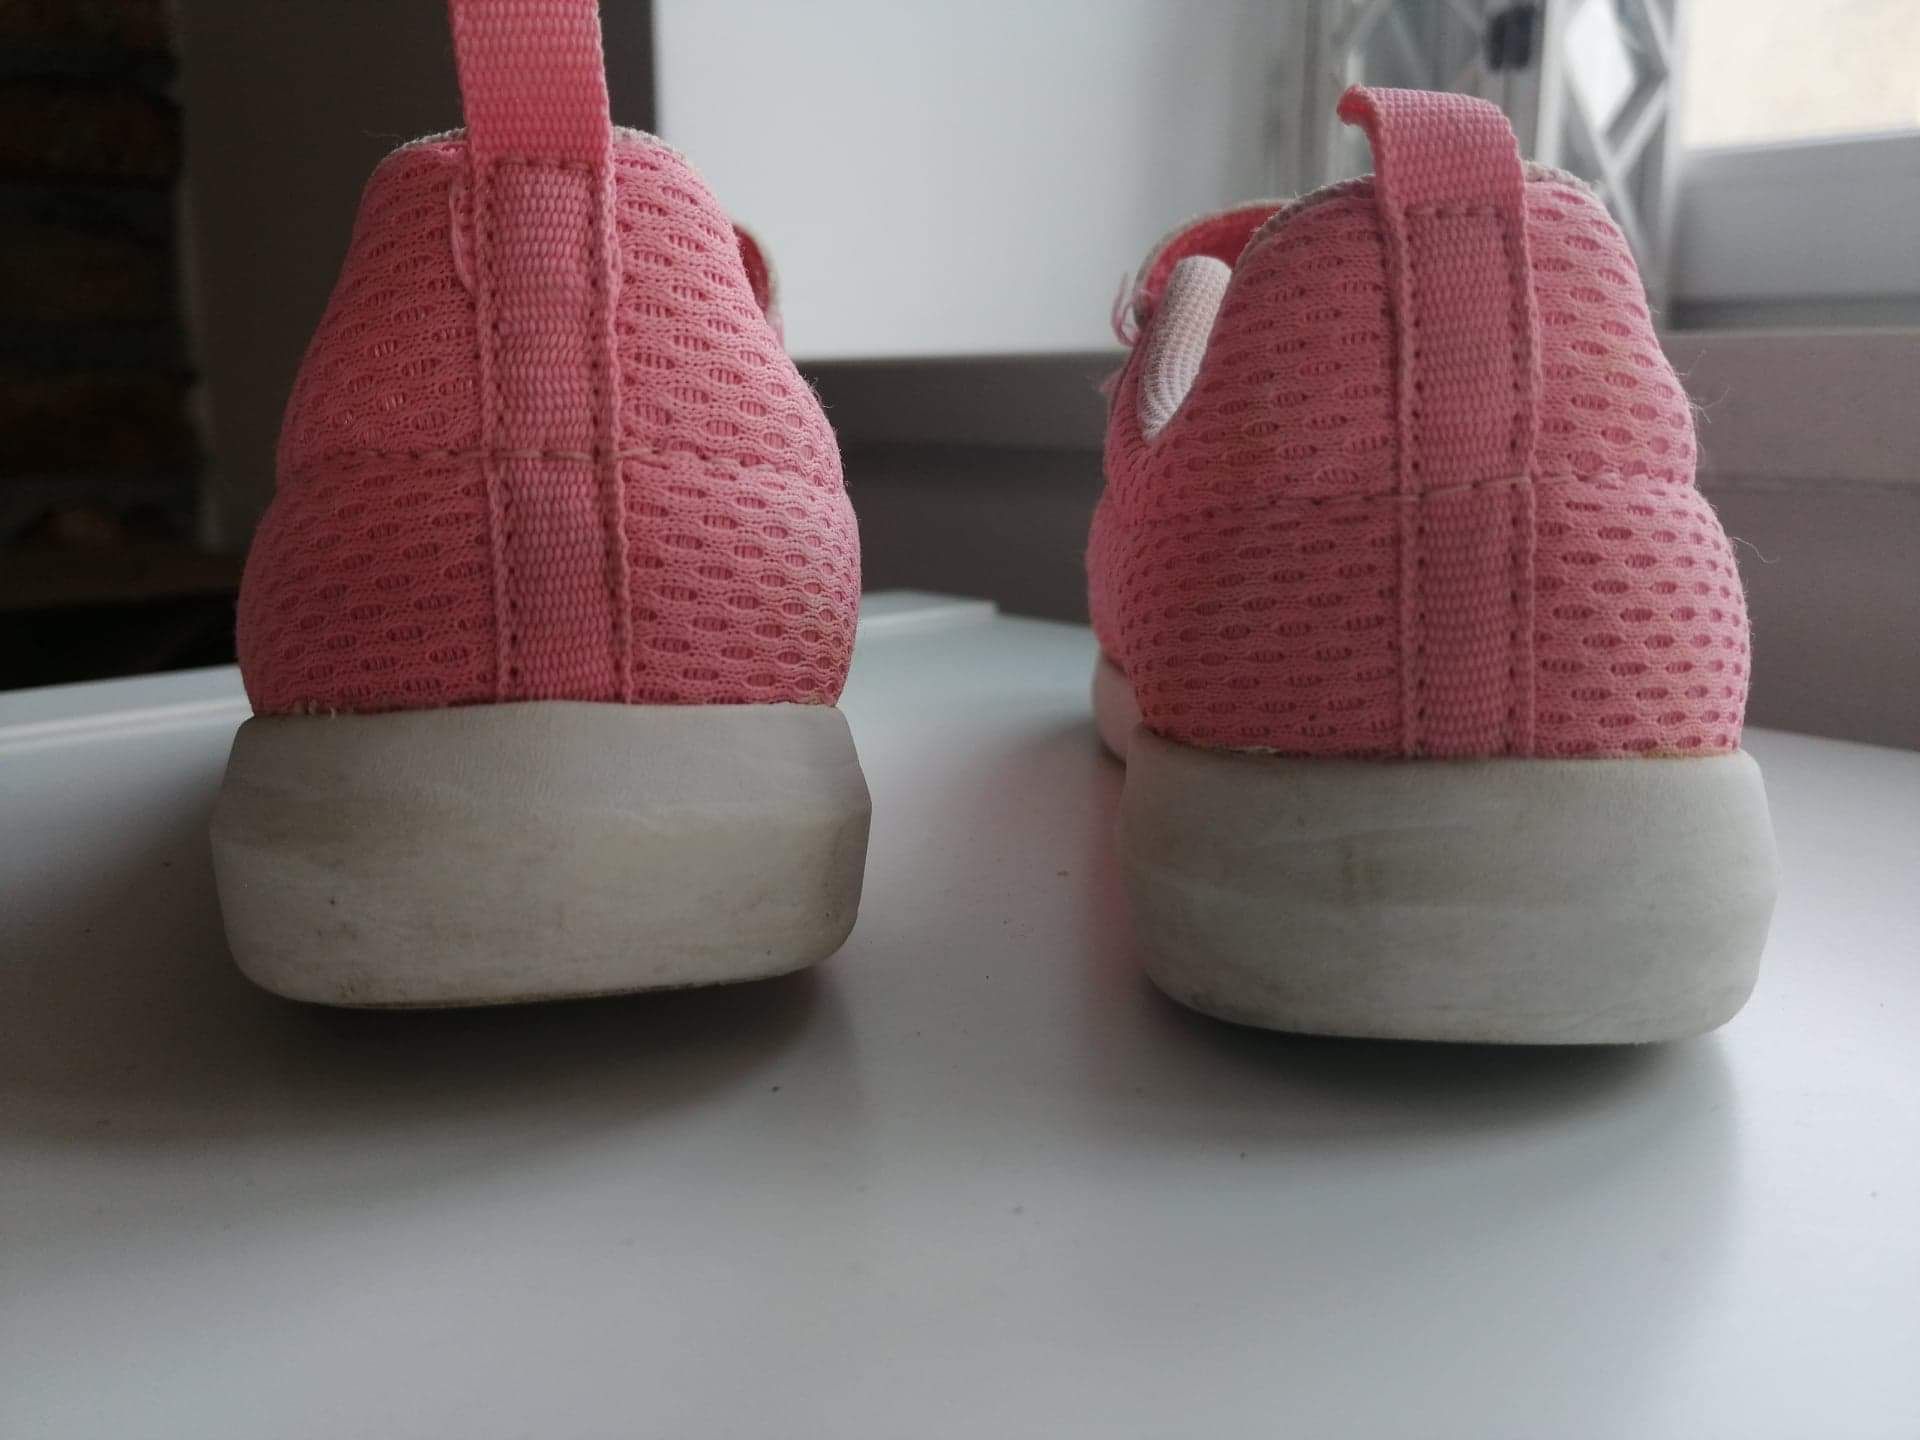 Buty sportowe dla dziewczynki HM 25 różowe siateczka